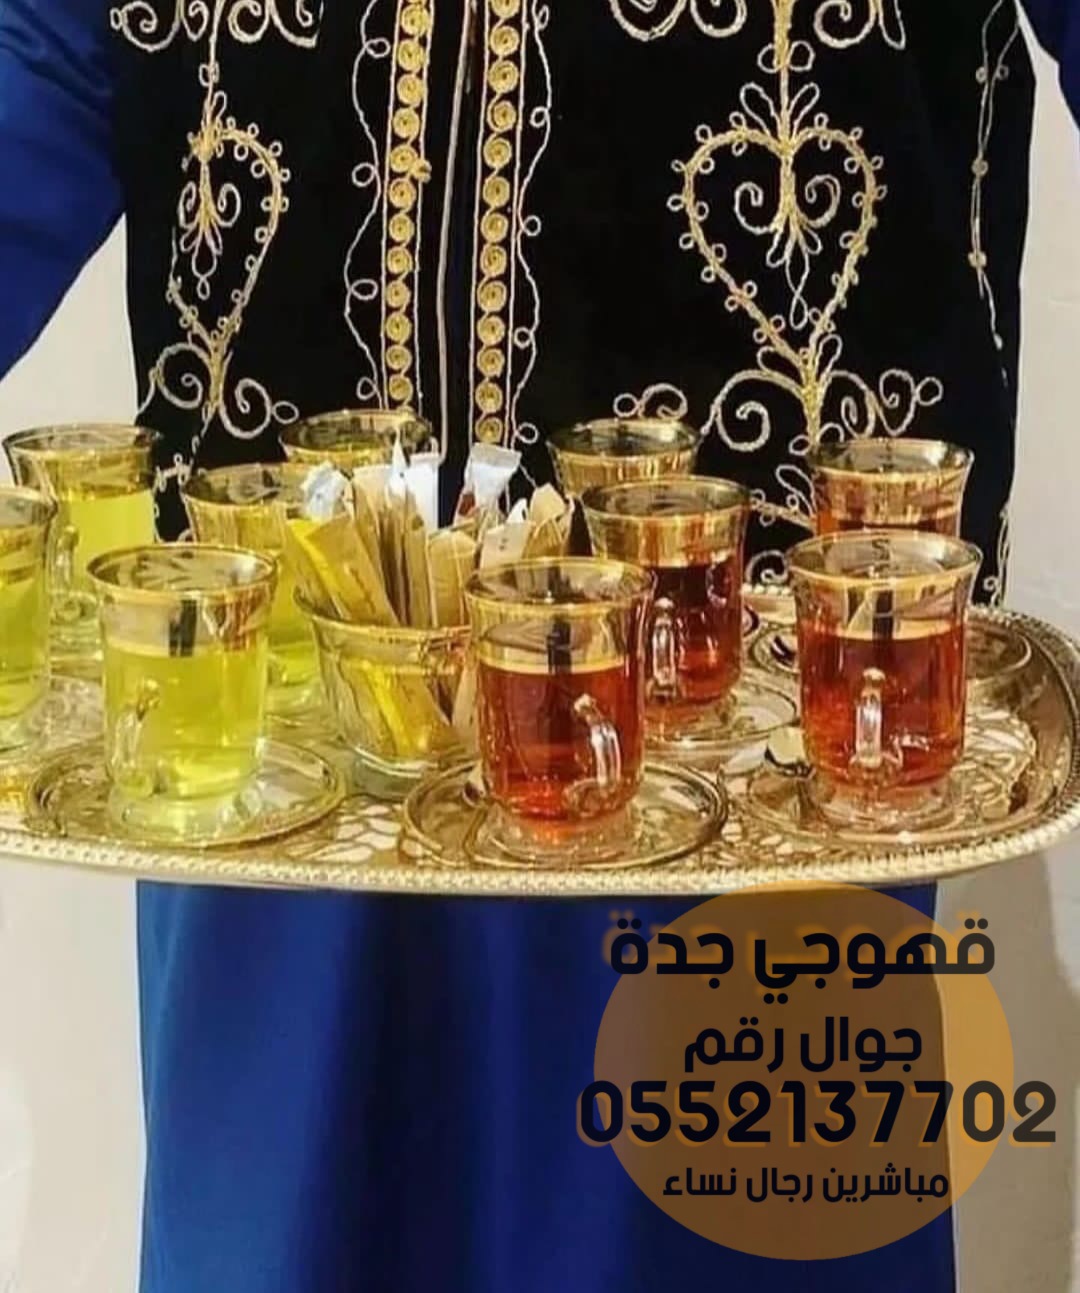 قهوجيين وصبابين قهوة في جدة 0552137702